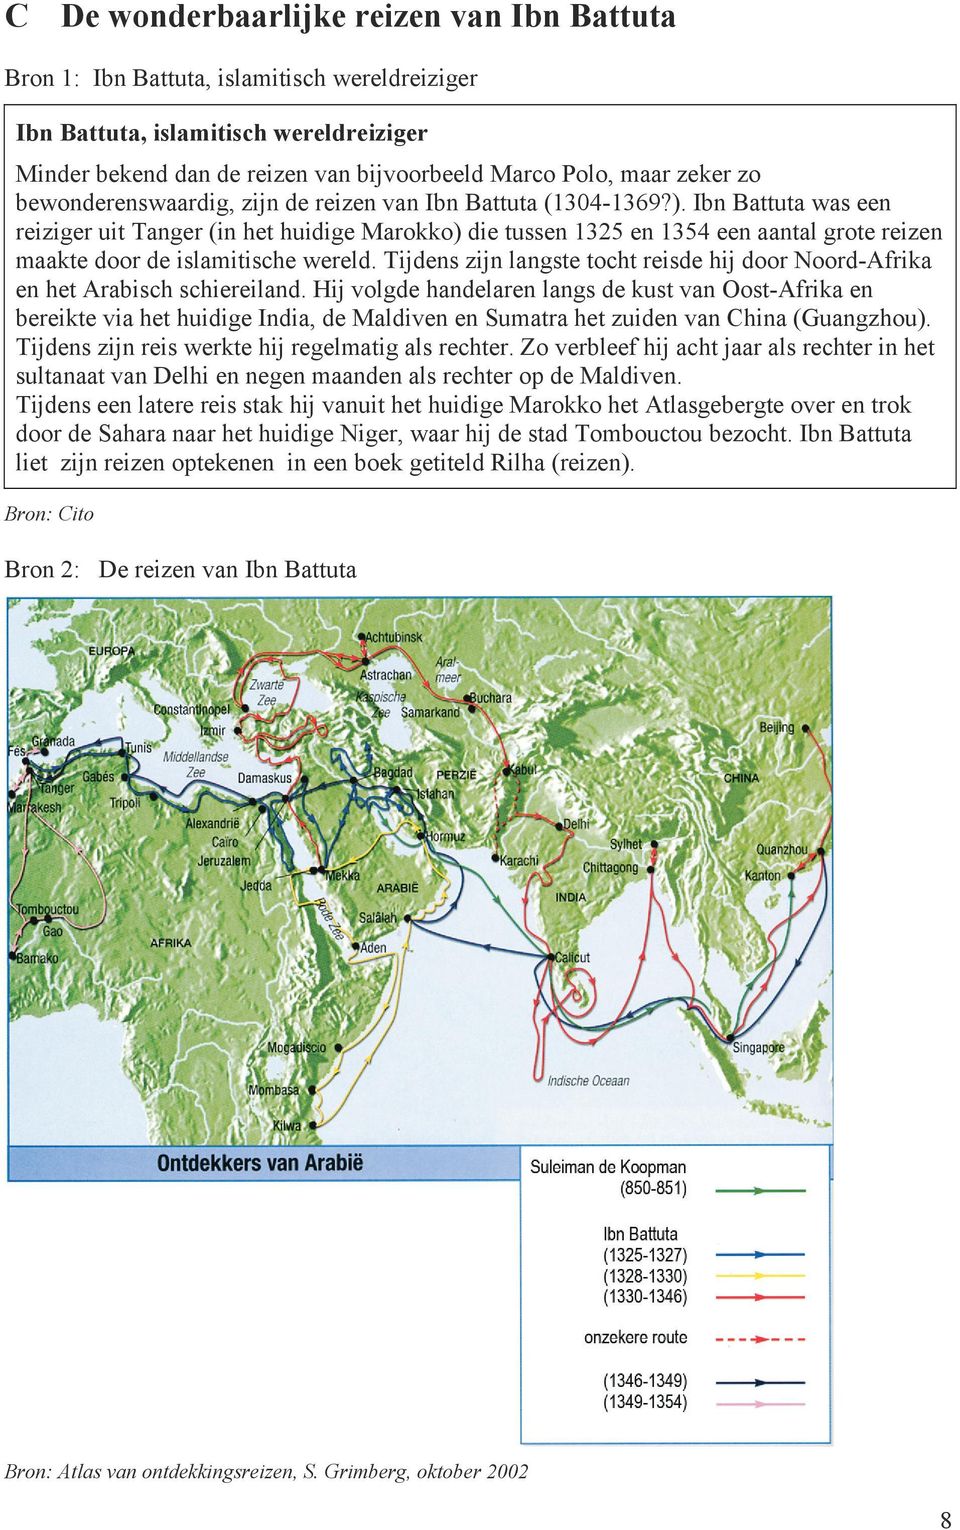 Ibn Battuta was een reiziger uit Tanger (in het huidige Marokko) die tussen 1325 en 1354 een aantal grote reizen maakte door de islamitische wereld.